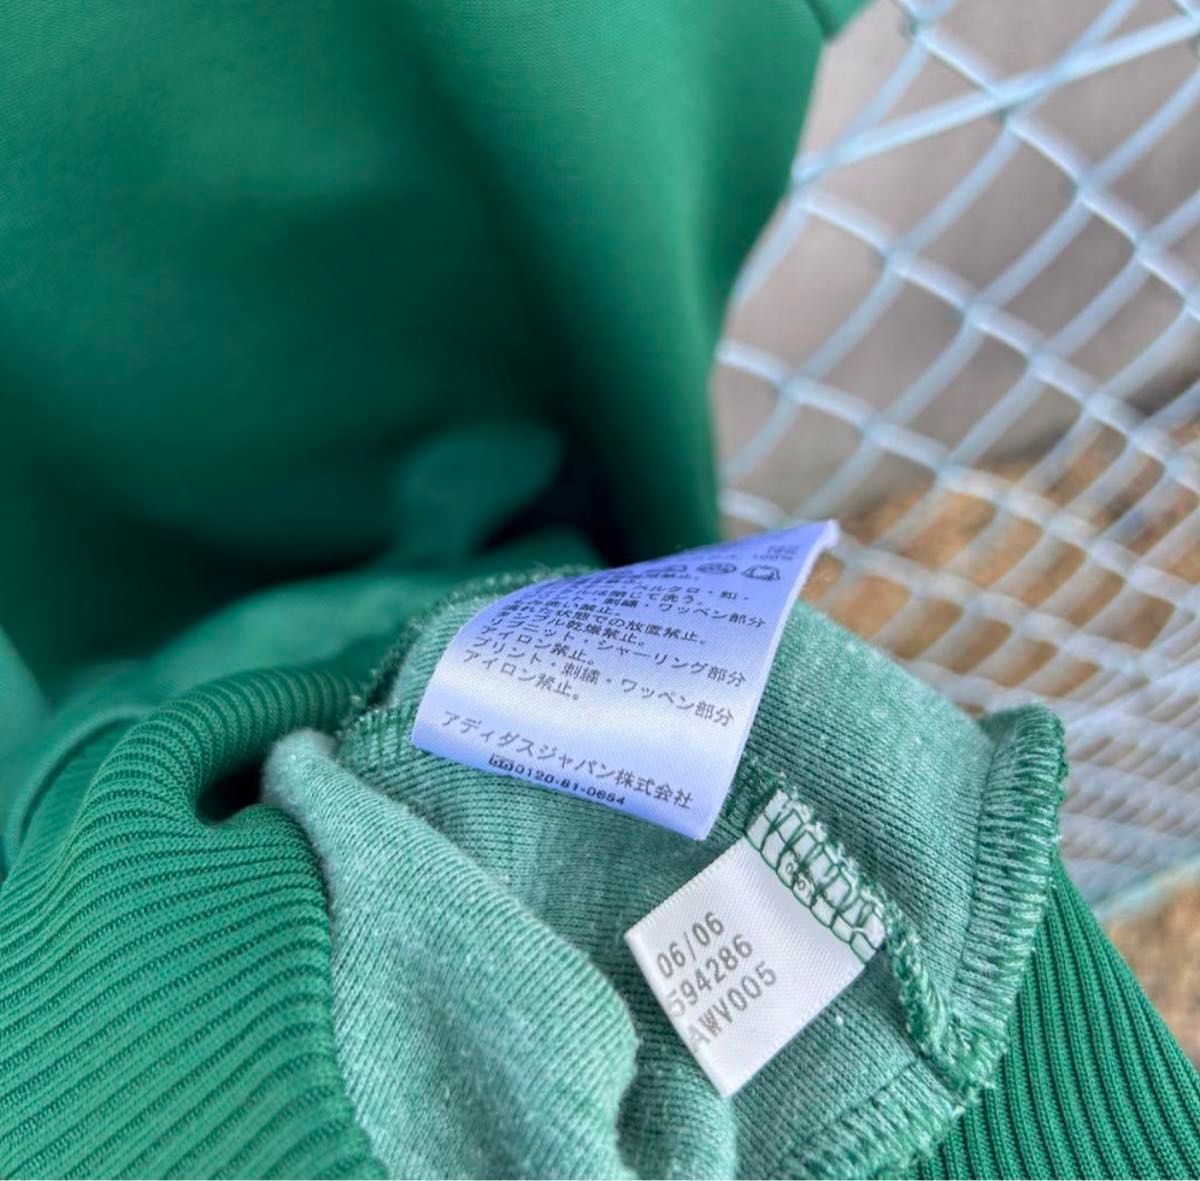 極美品 90s vintage adidas アディダス 刺繍ロゴ トラックジャケット ジャージ アースカラー 緑 グリーン